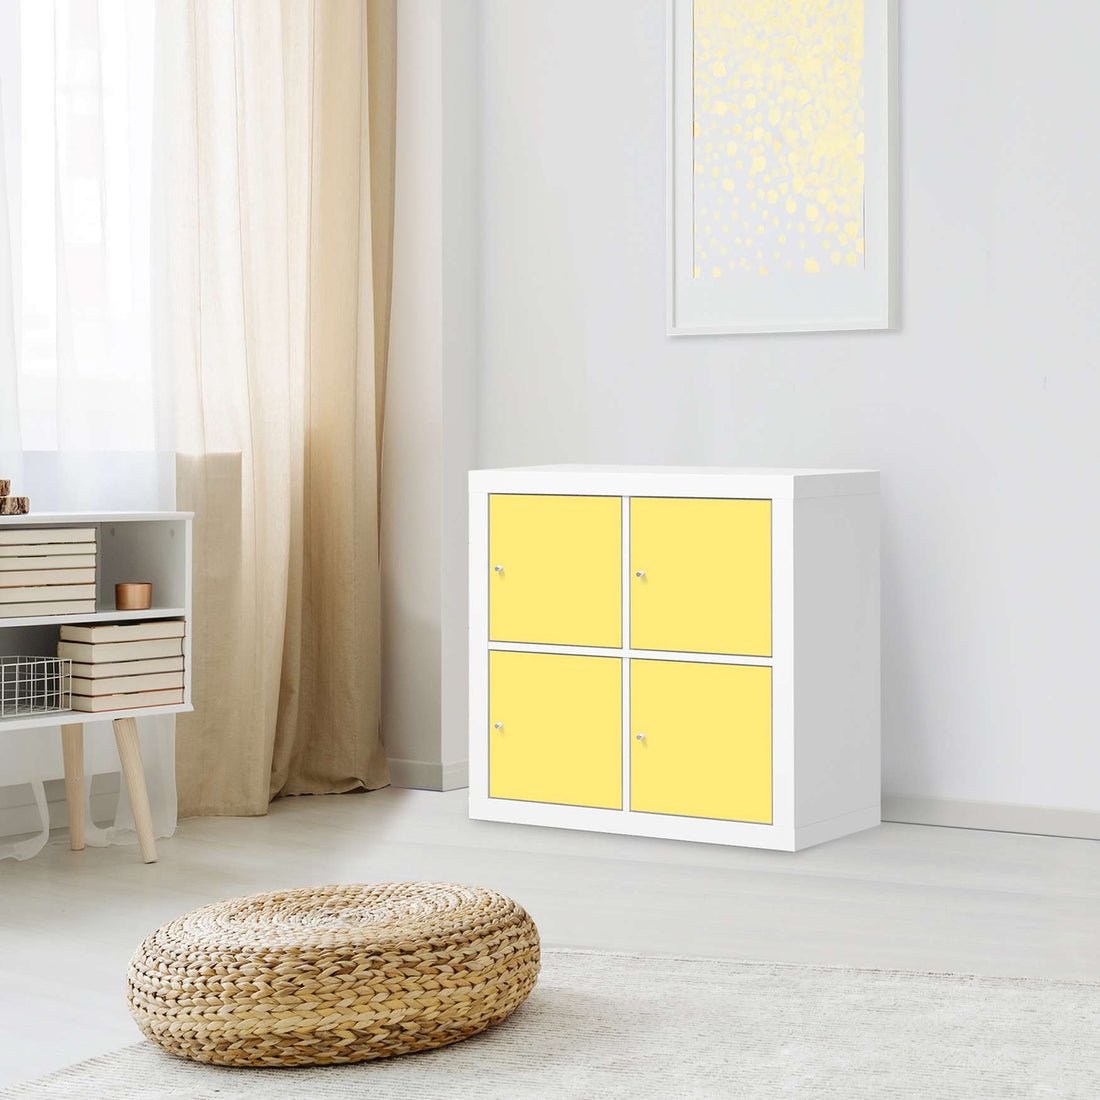 Möbelfolie Gelb Light - IKEA Expedit Regal 4 Türen - Wohnzimmer